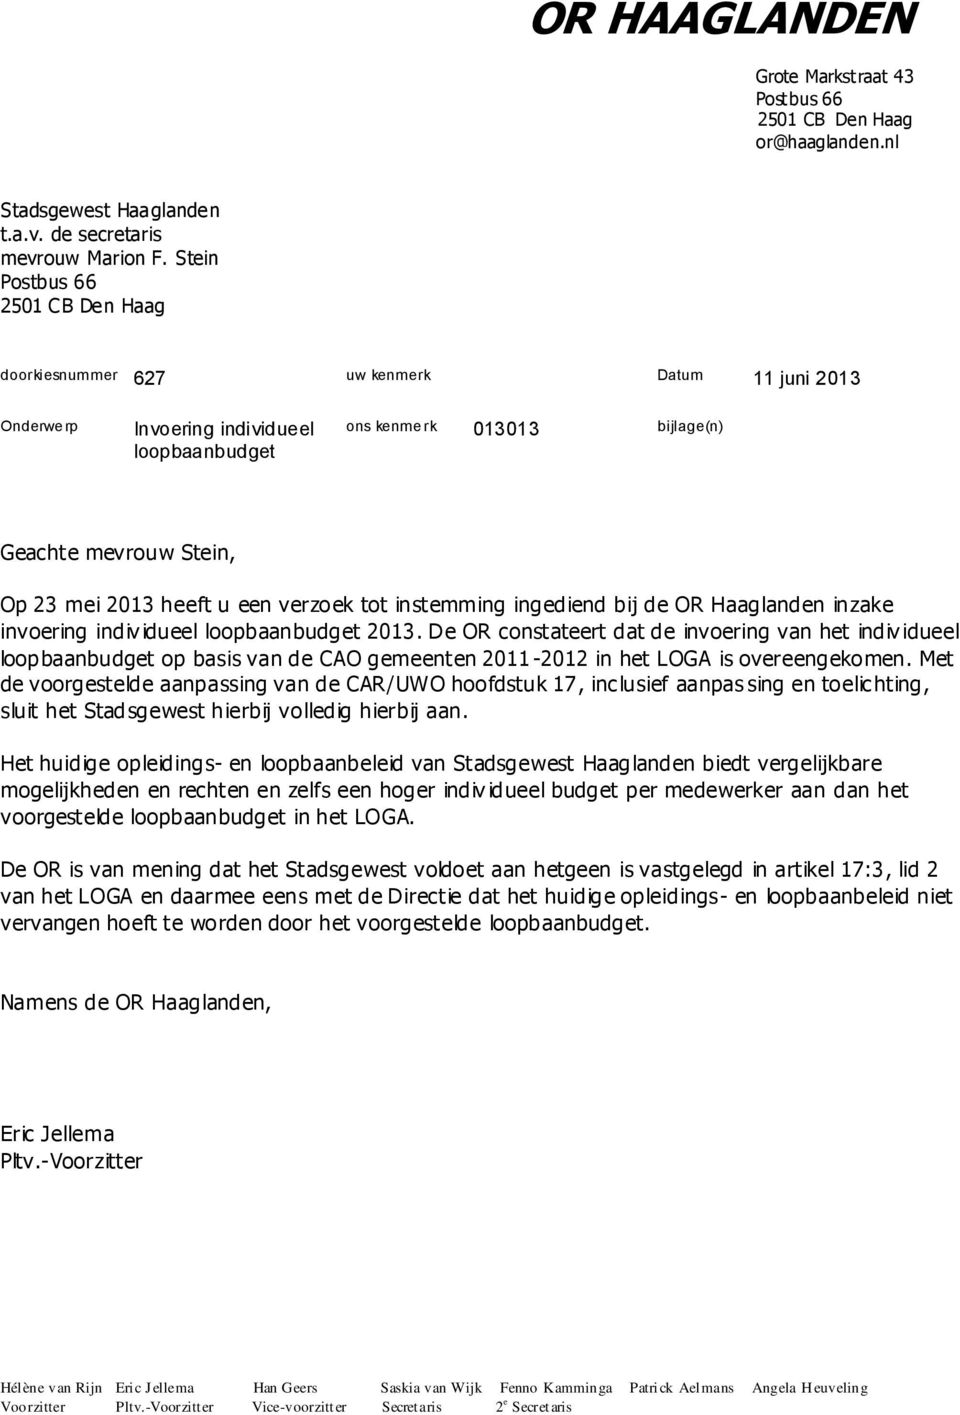 heeft u een verzoek tot instemming ingediend bij de OR Haaglanden inzake invoering indiv idueel loopbaanbudget 2013.